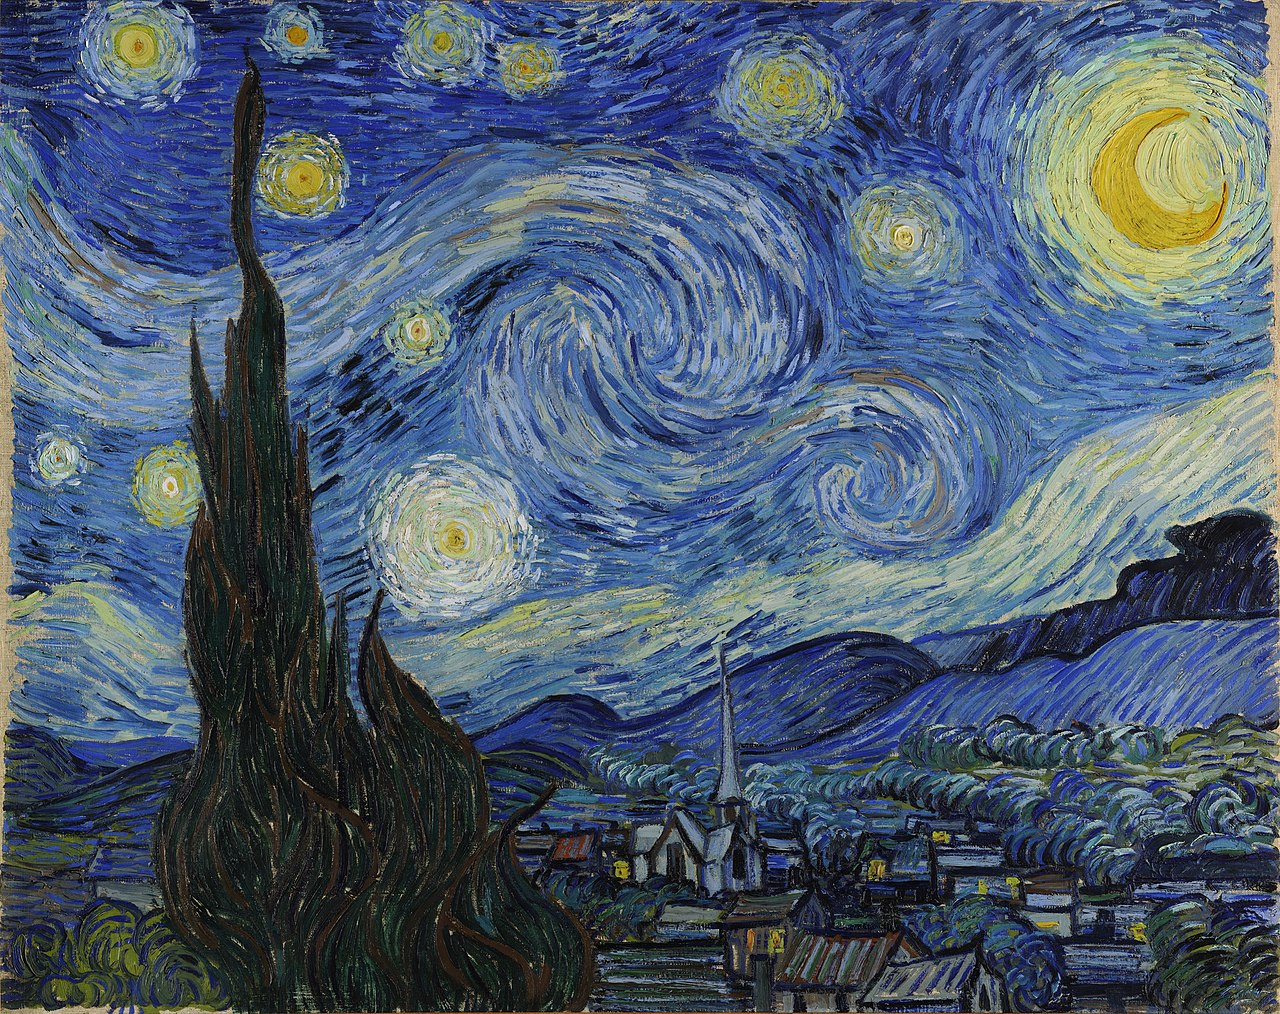 Sterrennacht by Vincent Van Gogh - 1889 - 73 x 92 cm 